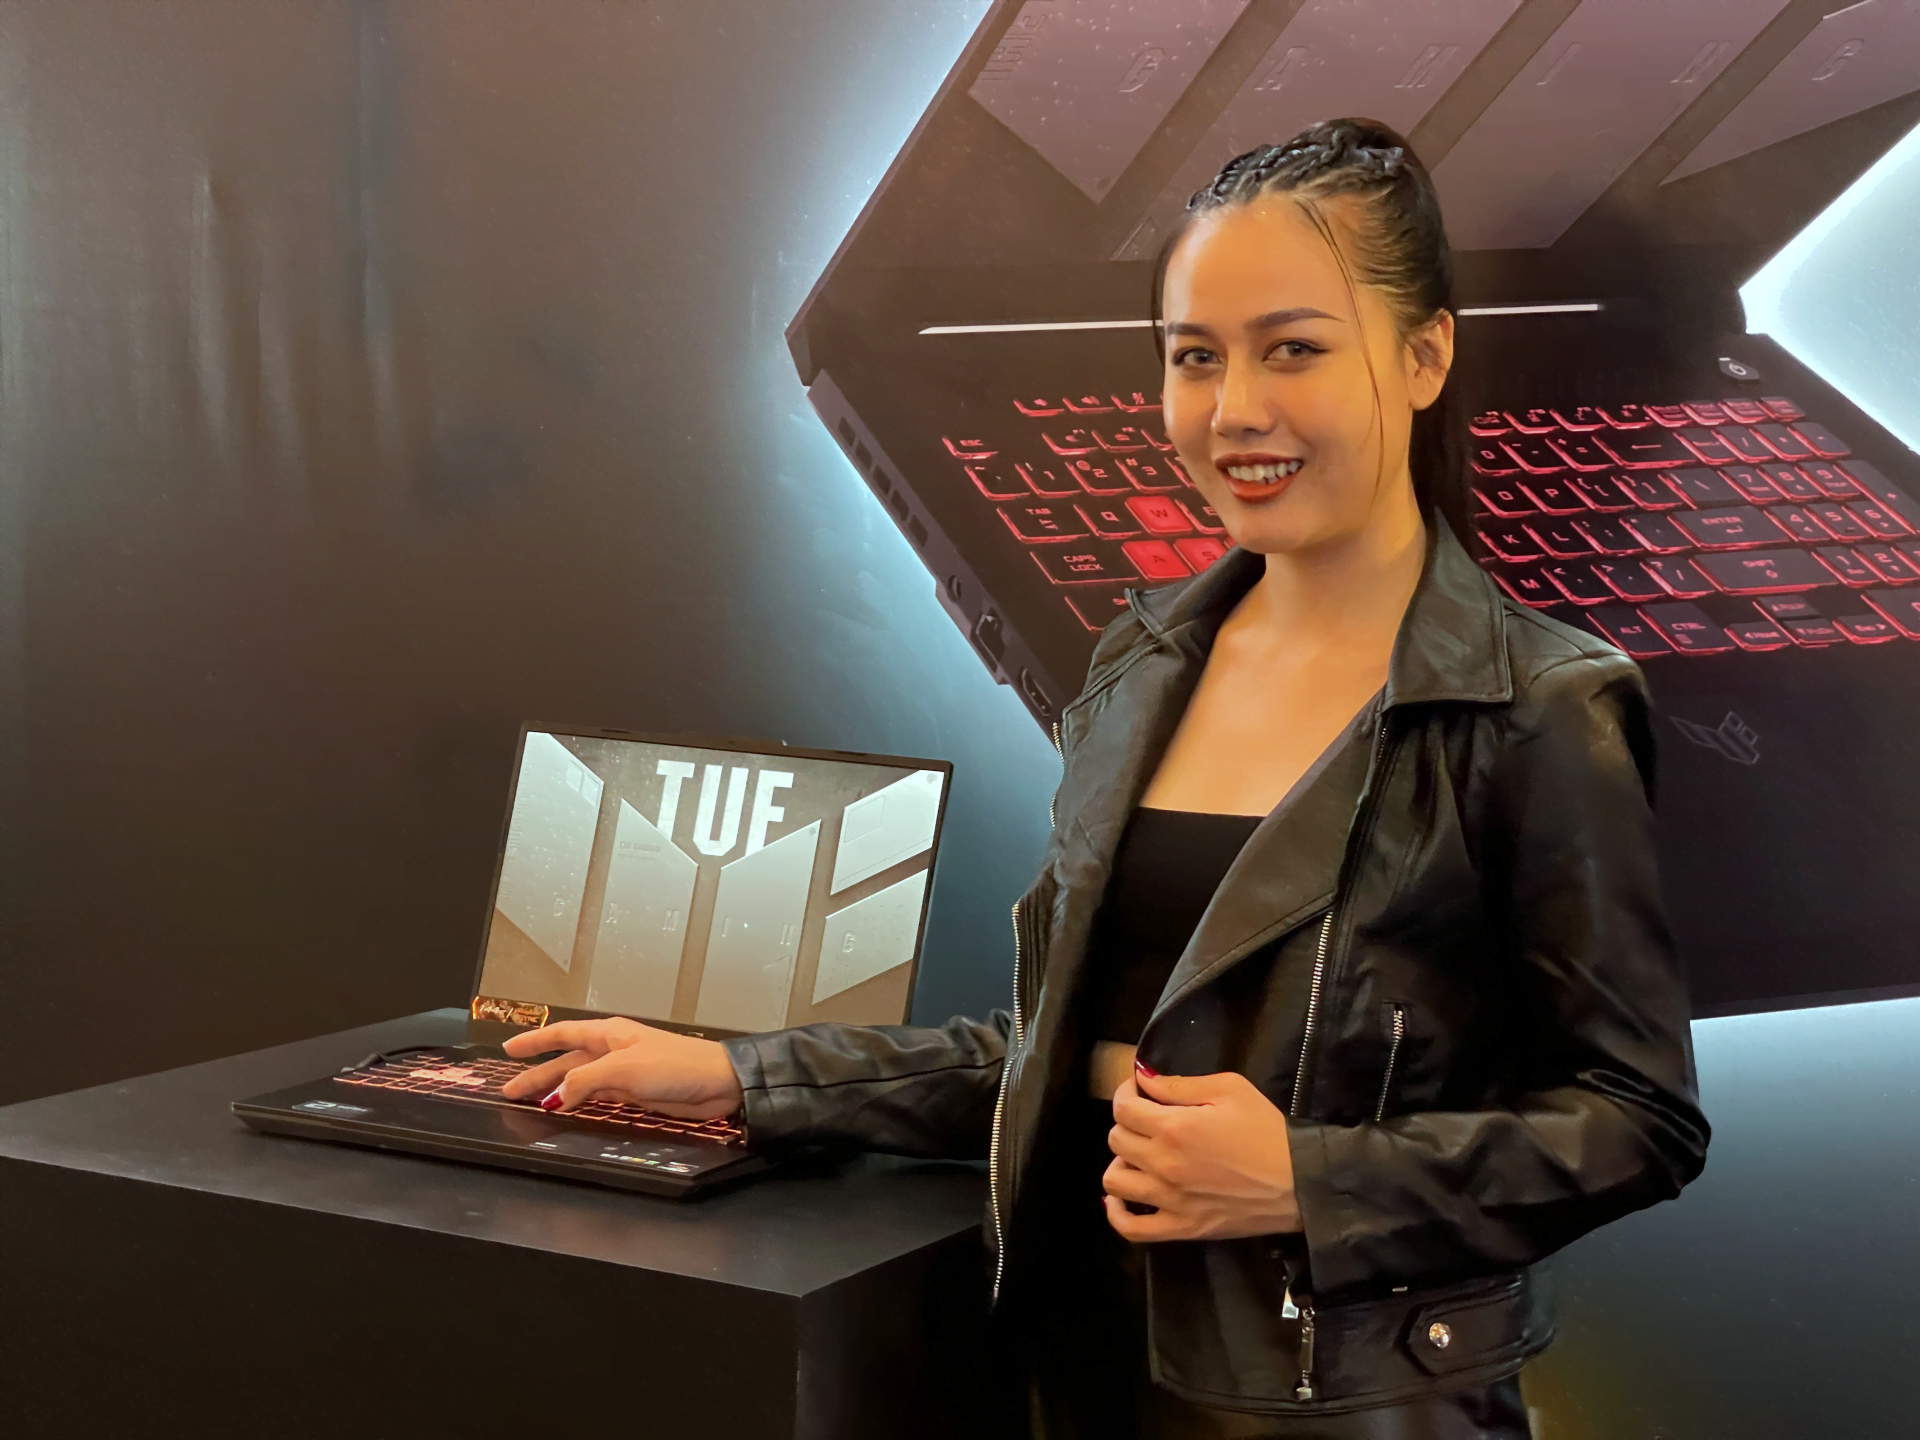 [PR] ASUS ROG công bố loạt sản phẩm laptop mới nền tảng AMD Ryzen 6000 Series tại thị trường Việt Nam - Image 17